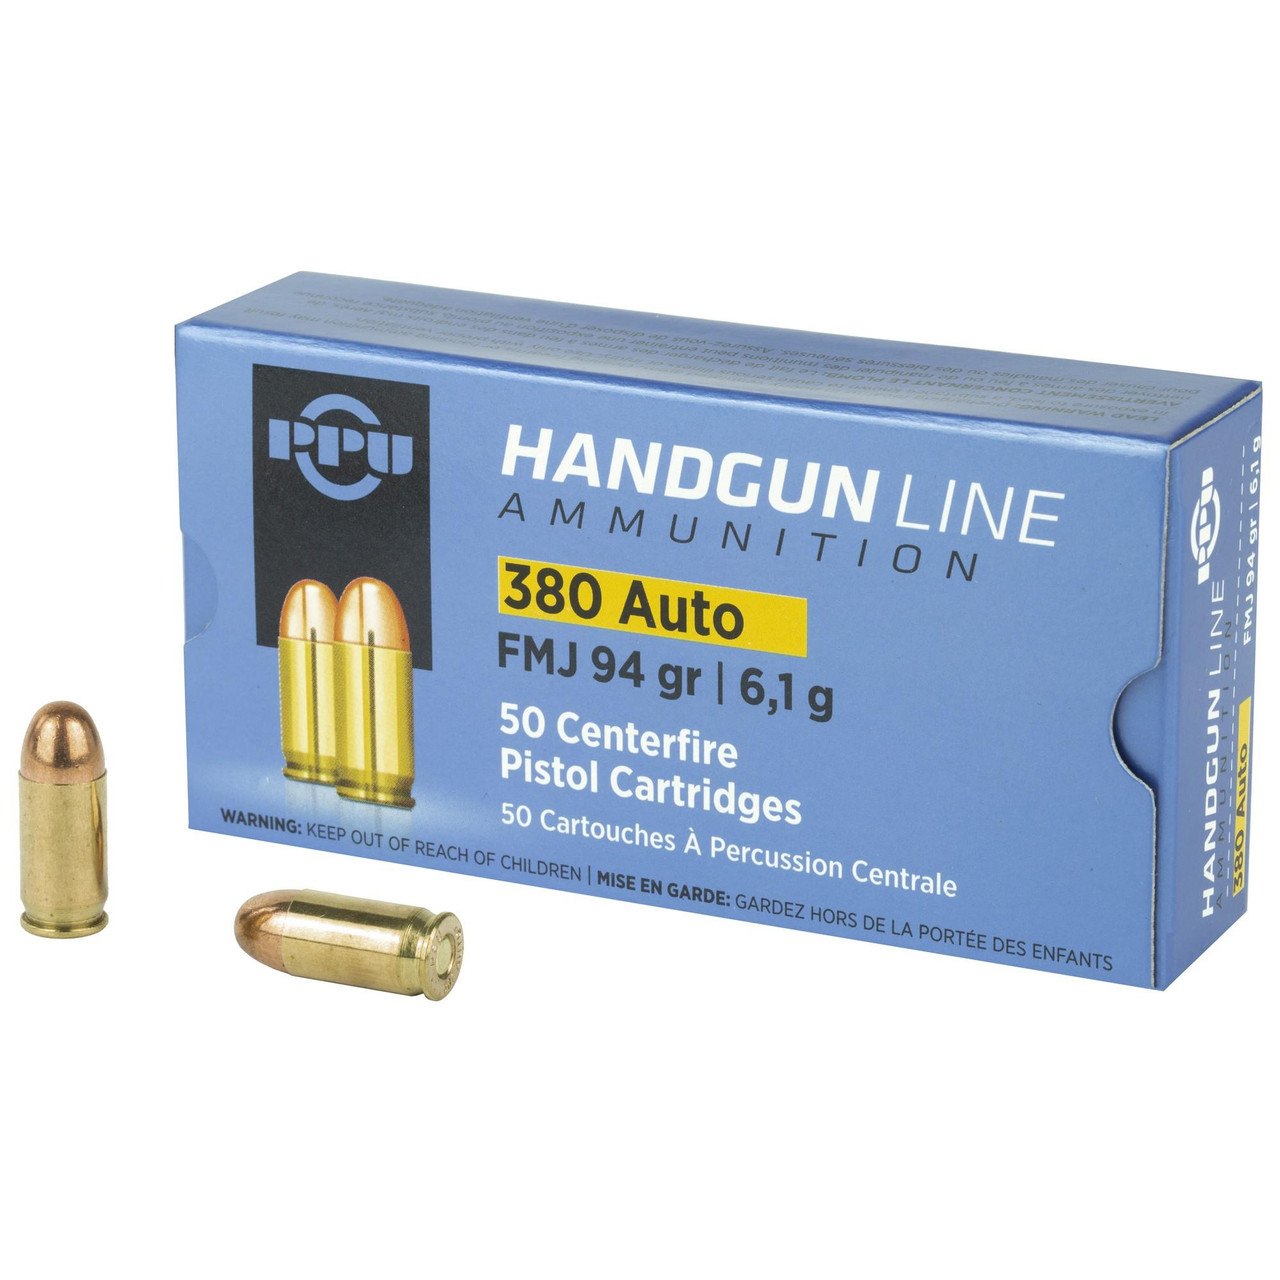 PPU Handgun Line 380 Auto